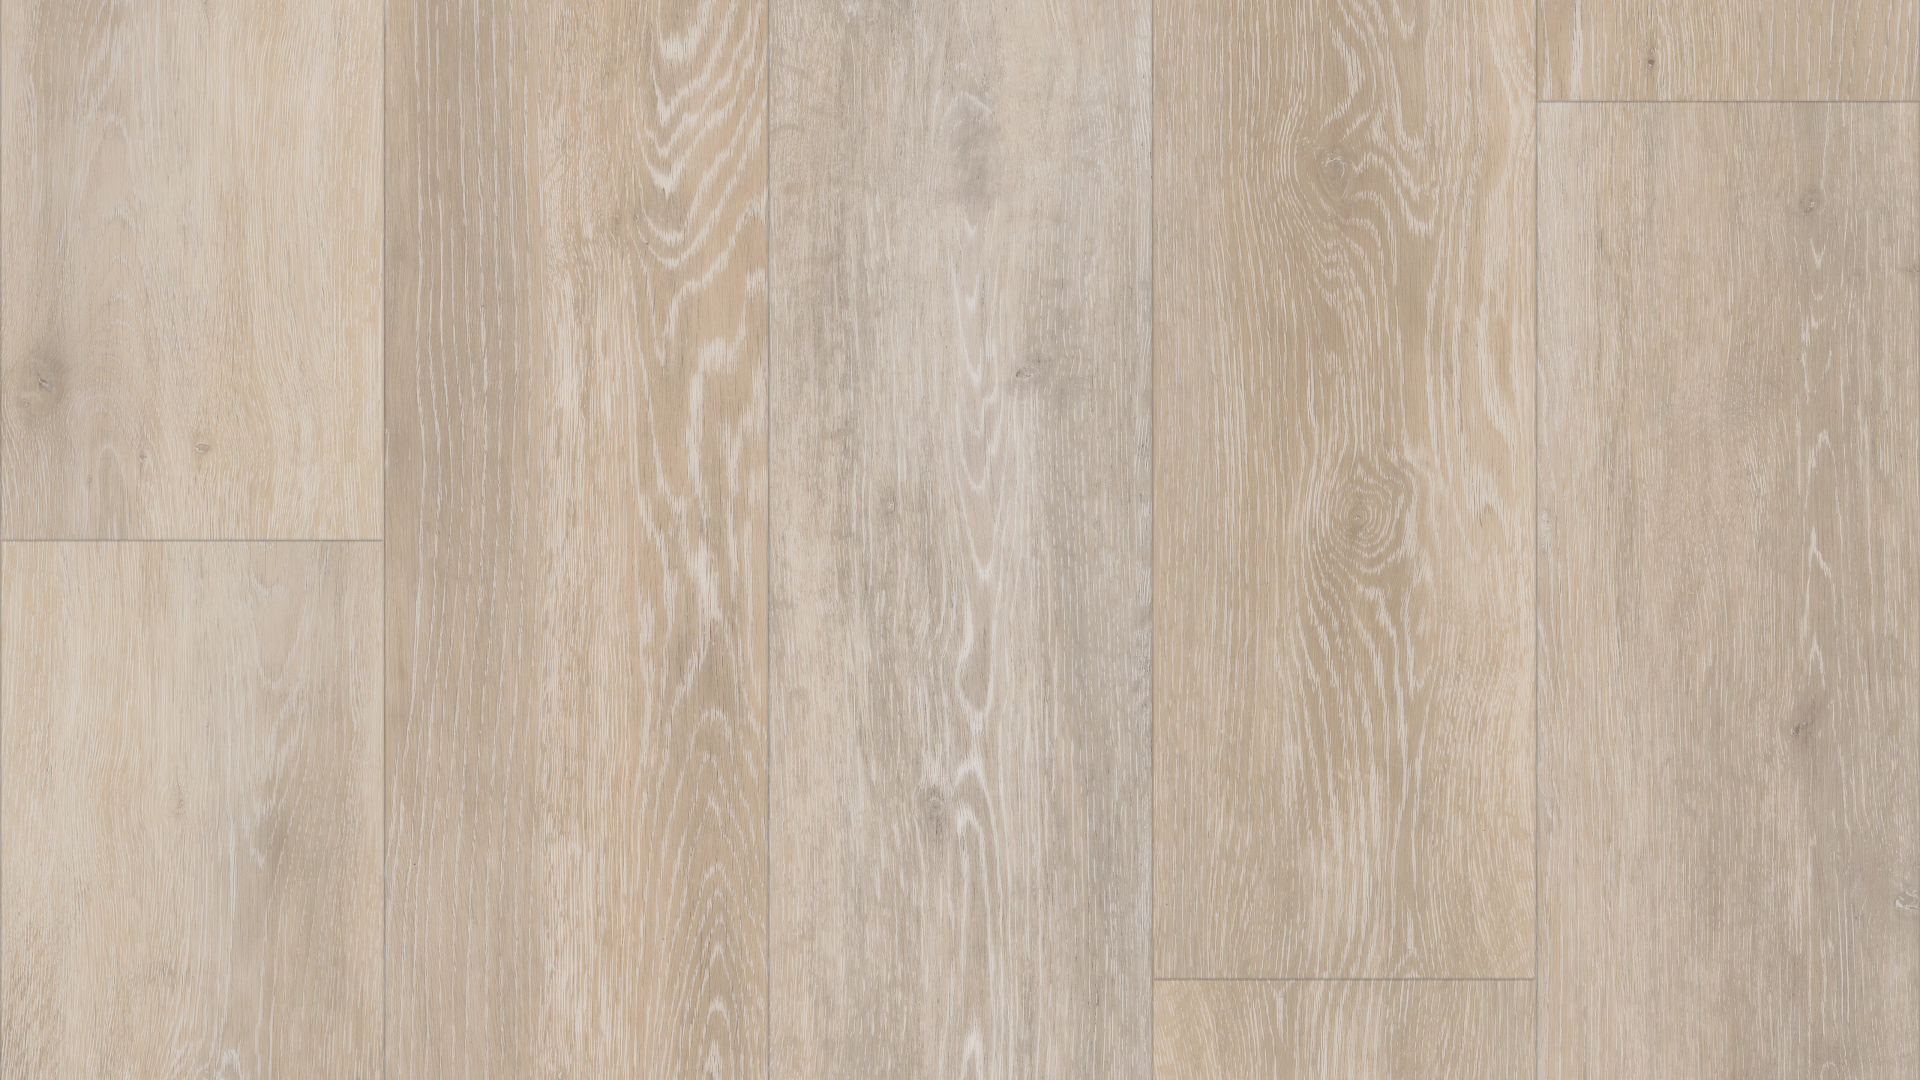 Whitewashed Oak, Luxury Vinyl Plank Flooring